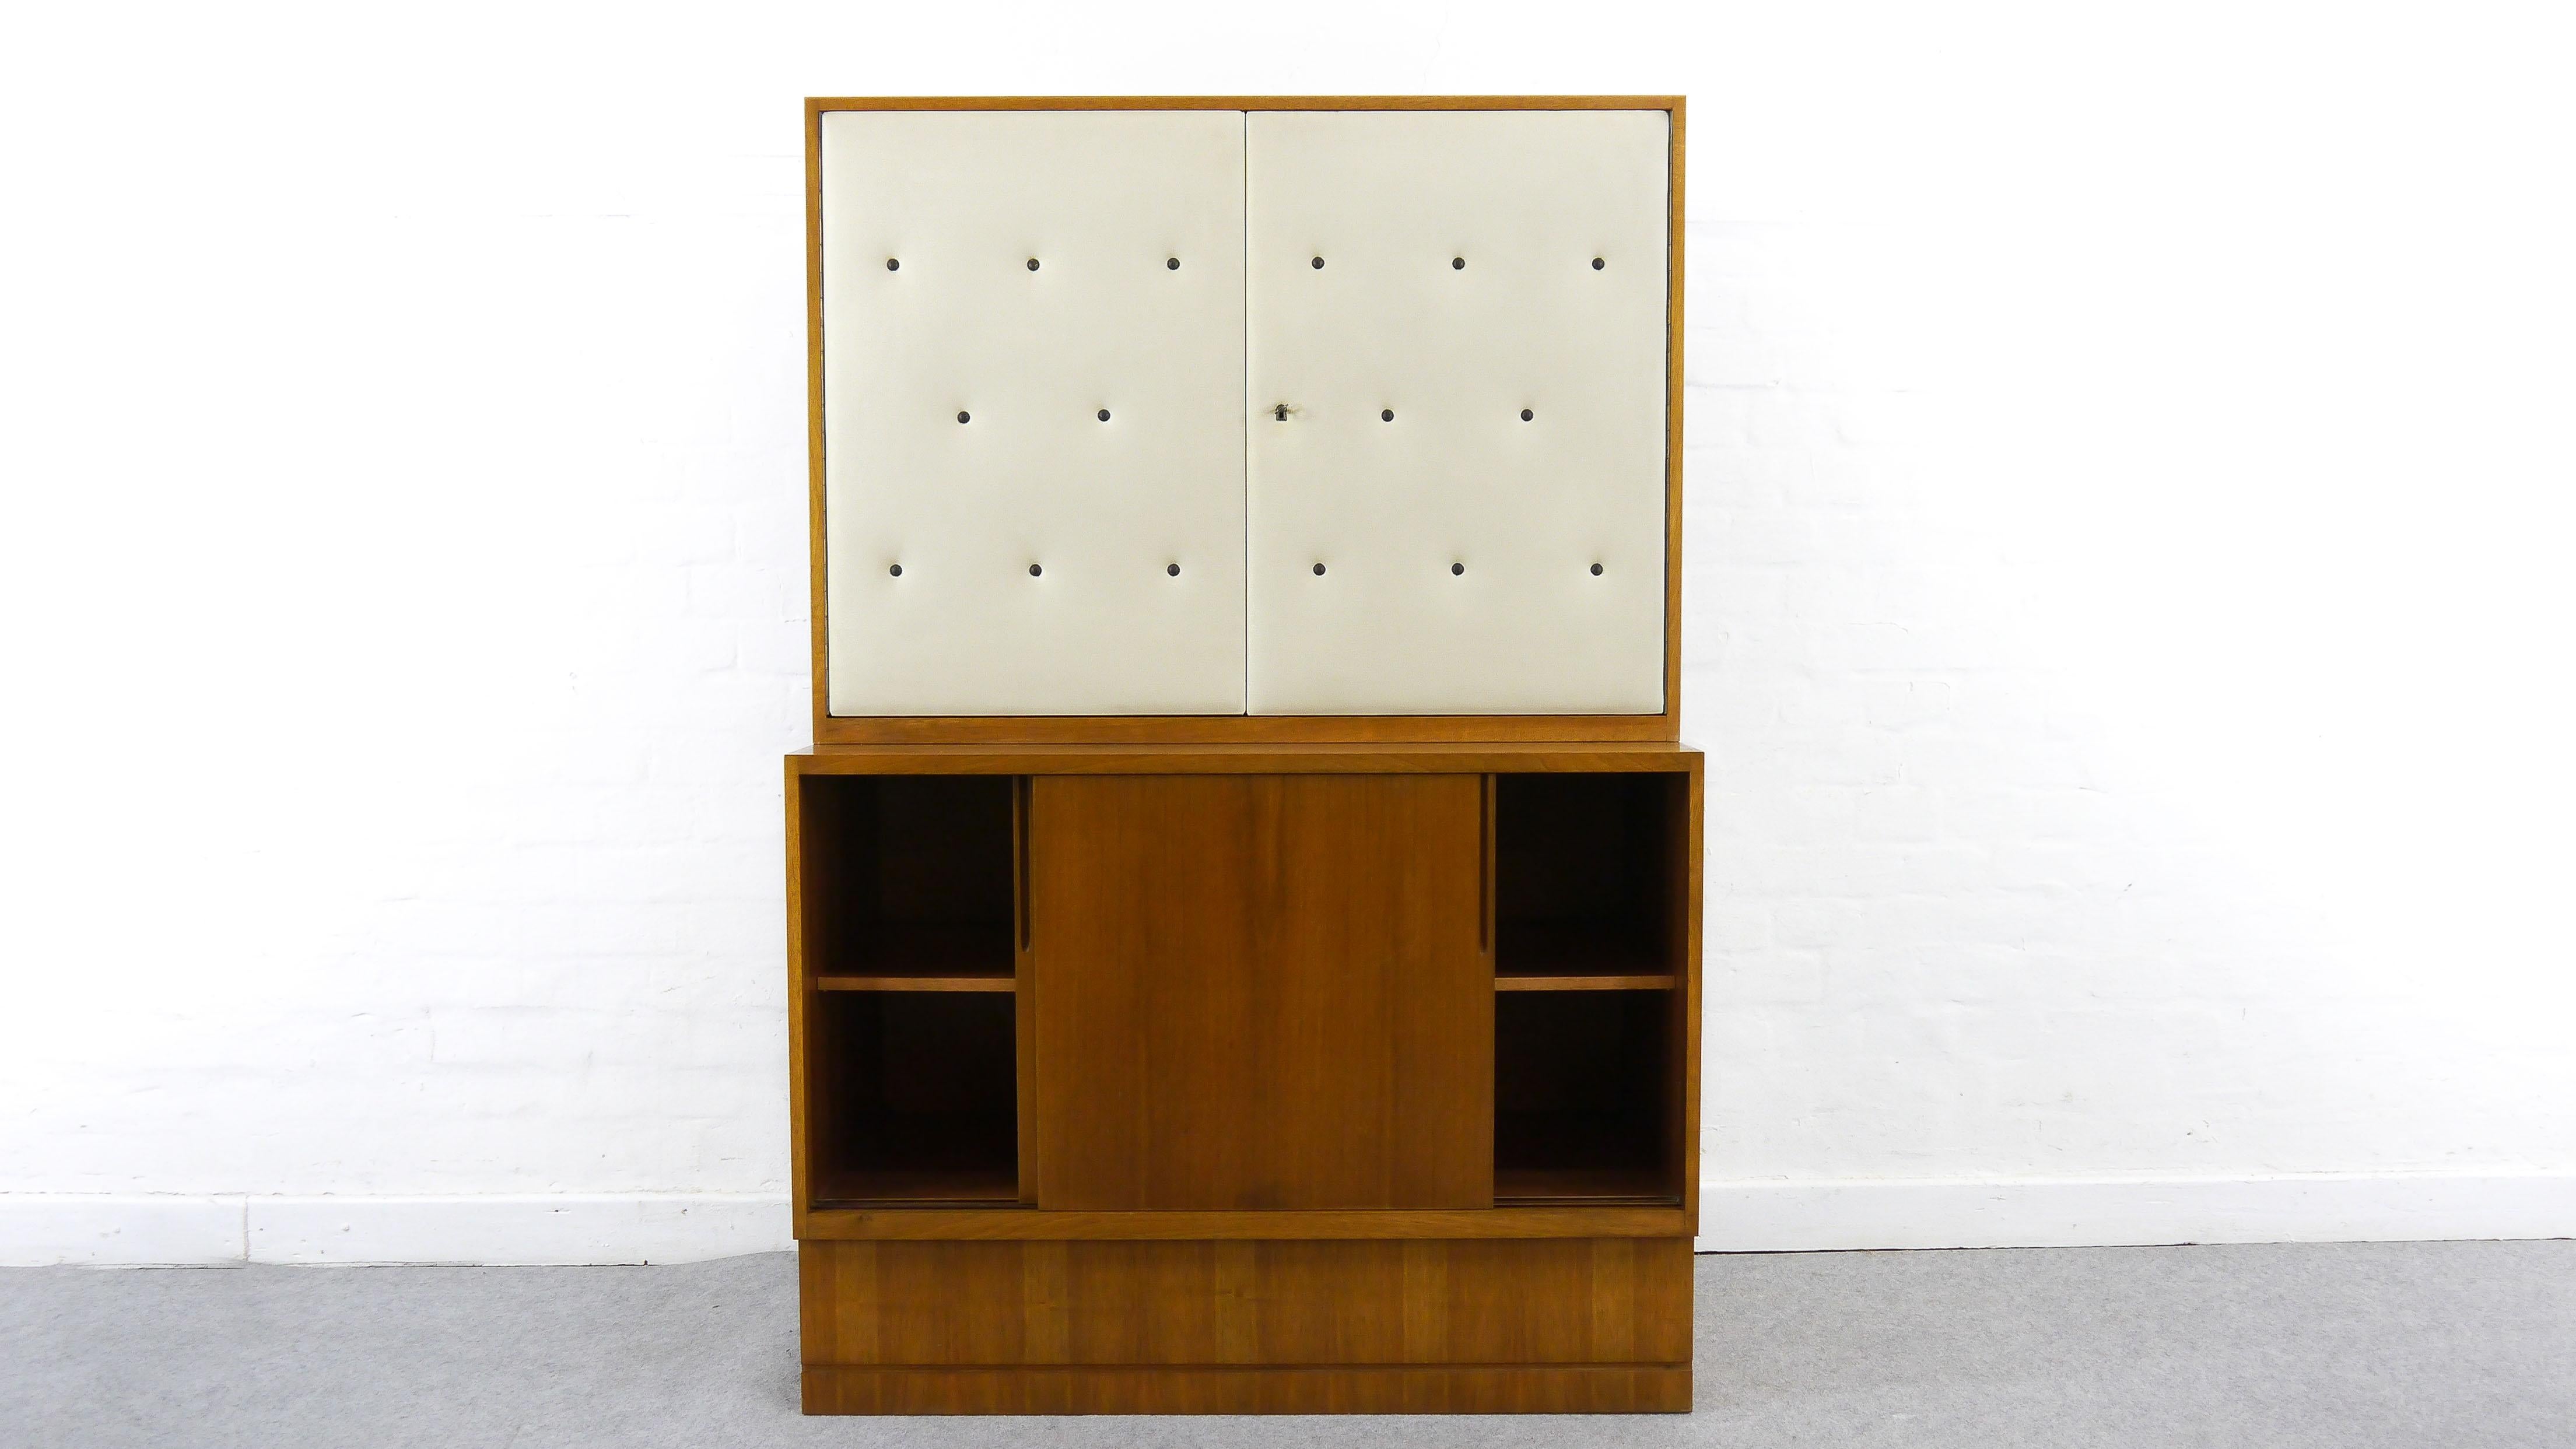 Franz Ehrlich, élève du Bauhaus, a conçu cette série de meubles au début des années cinquante pour le VEB Deutsche Werkstätten Hellerau. Barel avec 2 portes, en miroir et avec pierre/verre à l'intérieur. Buffet à deux portes